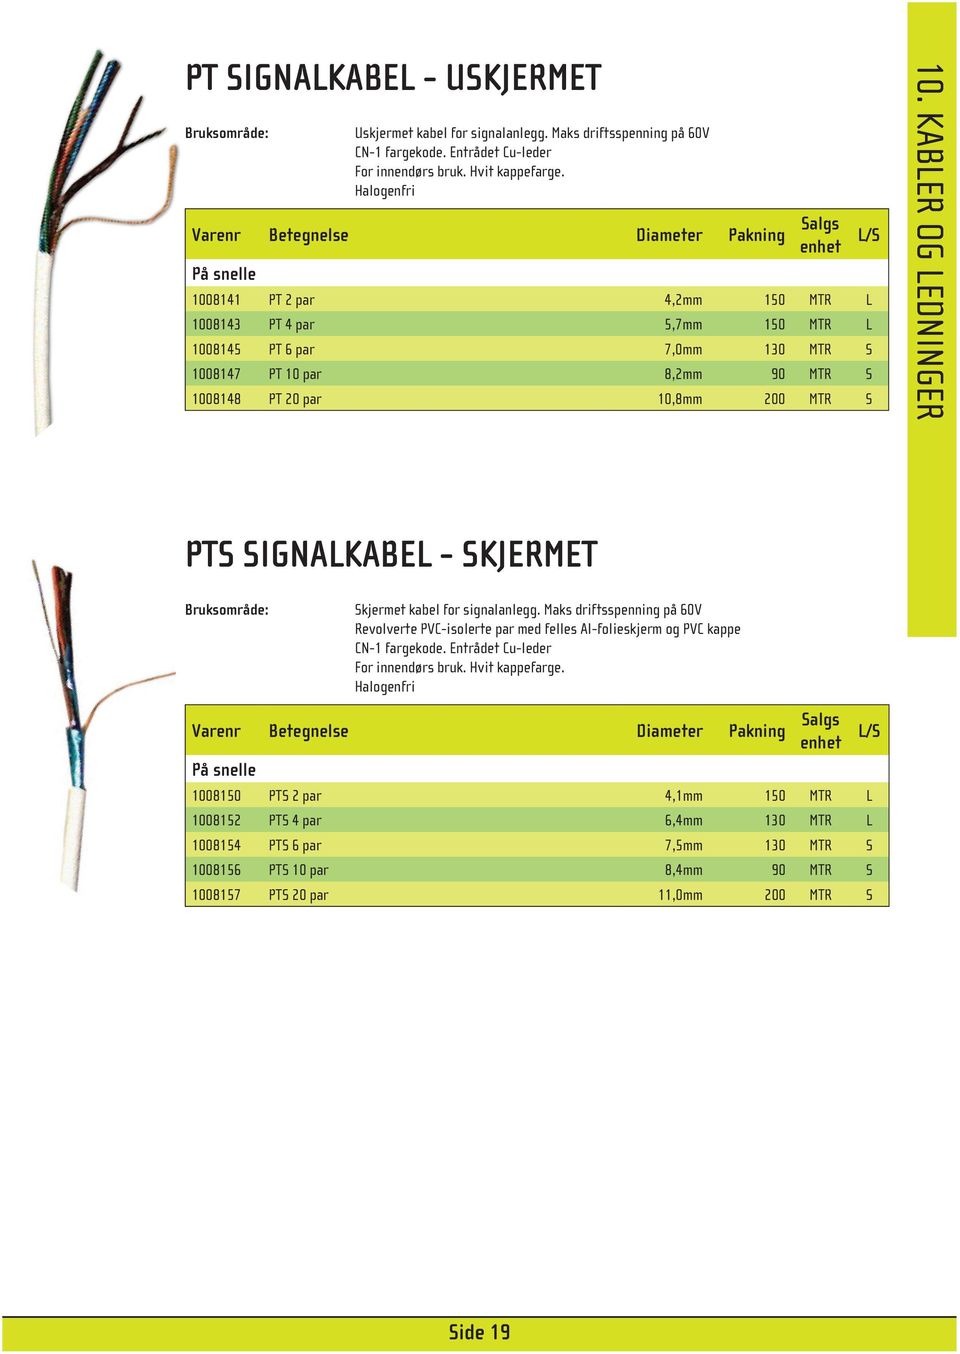 1008148 PT 20 par 10,8mm 200 MTR S 10. KABLER OG LEDNINGER PTS SIGNALKABEL - SKJERMET Bruksområde: Skjermet kabel for signalanlegg.